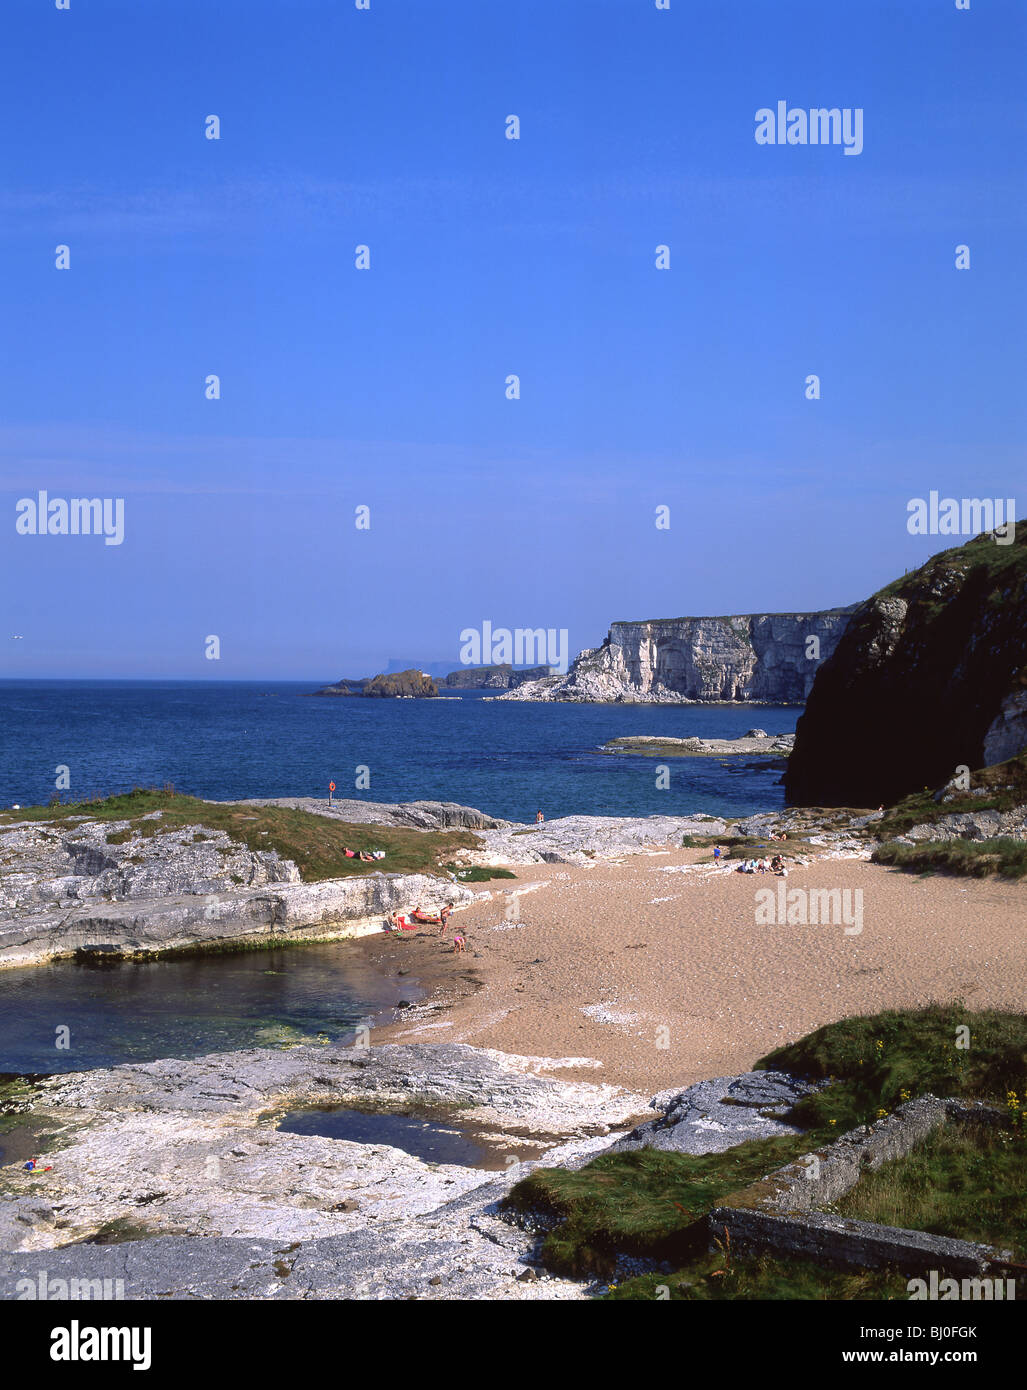 Scène côtière et la plage, la côte de Causeway, l'Irlande du Nord, Royaume-Uni Banque D'Images